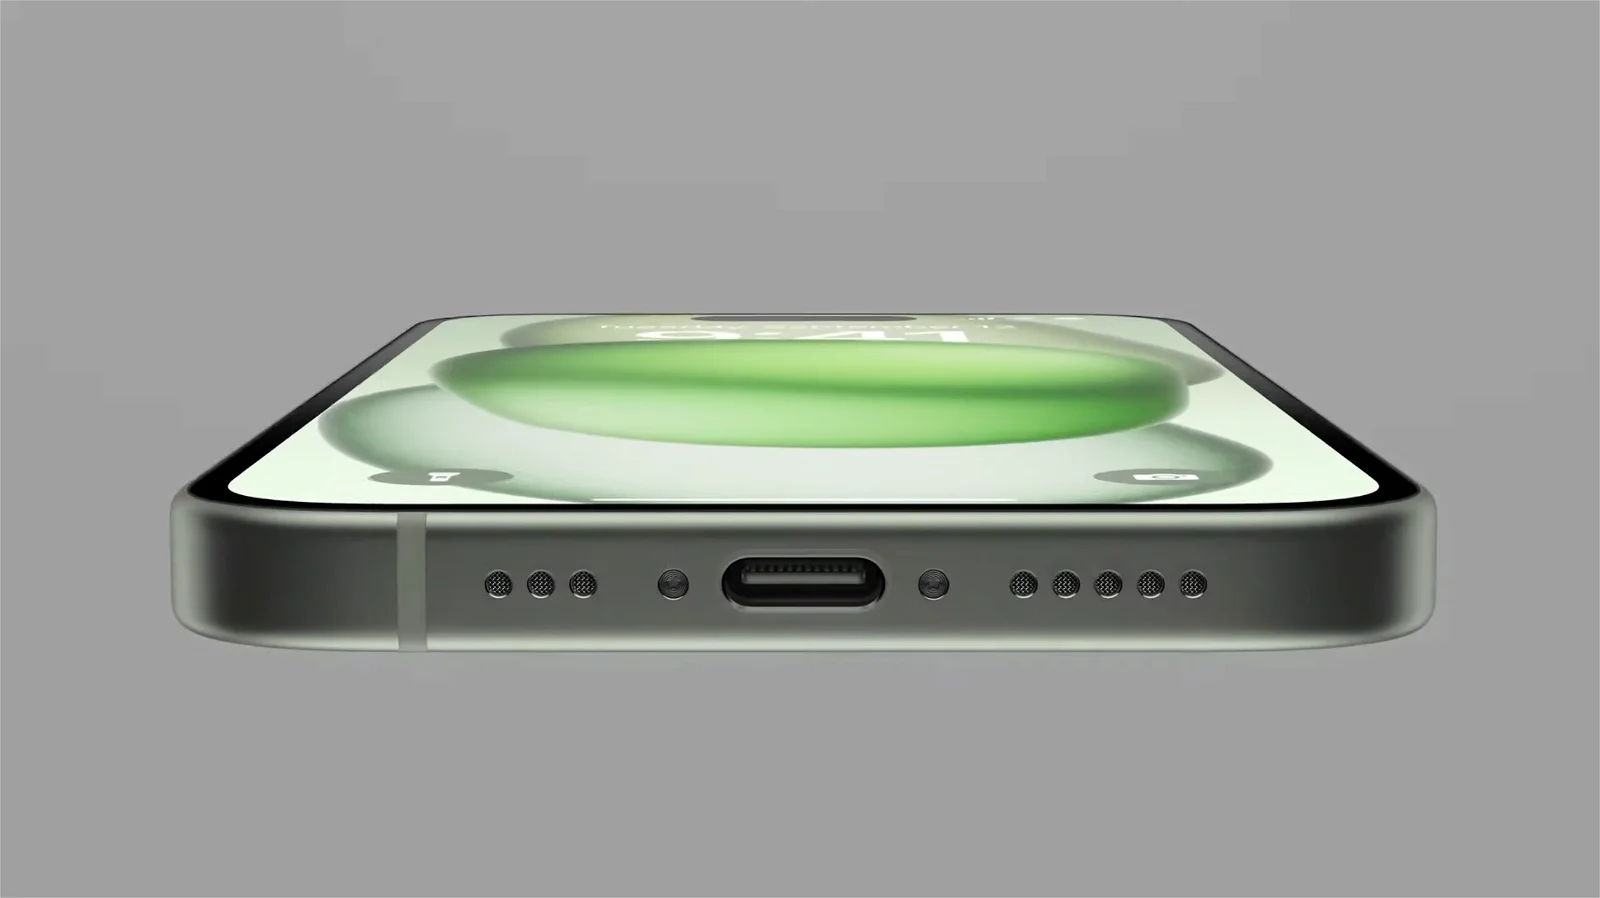 iPhone 15 llegaría con un gran cambio: Apple dejará de producir